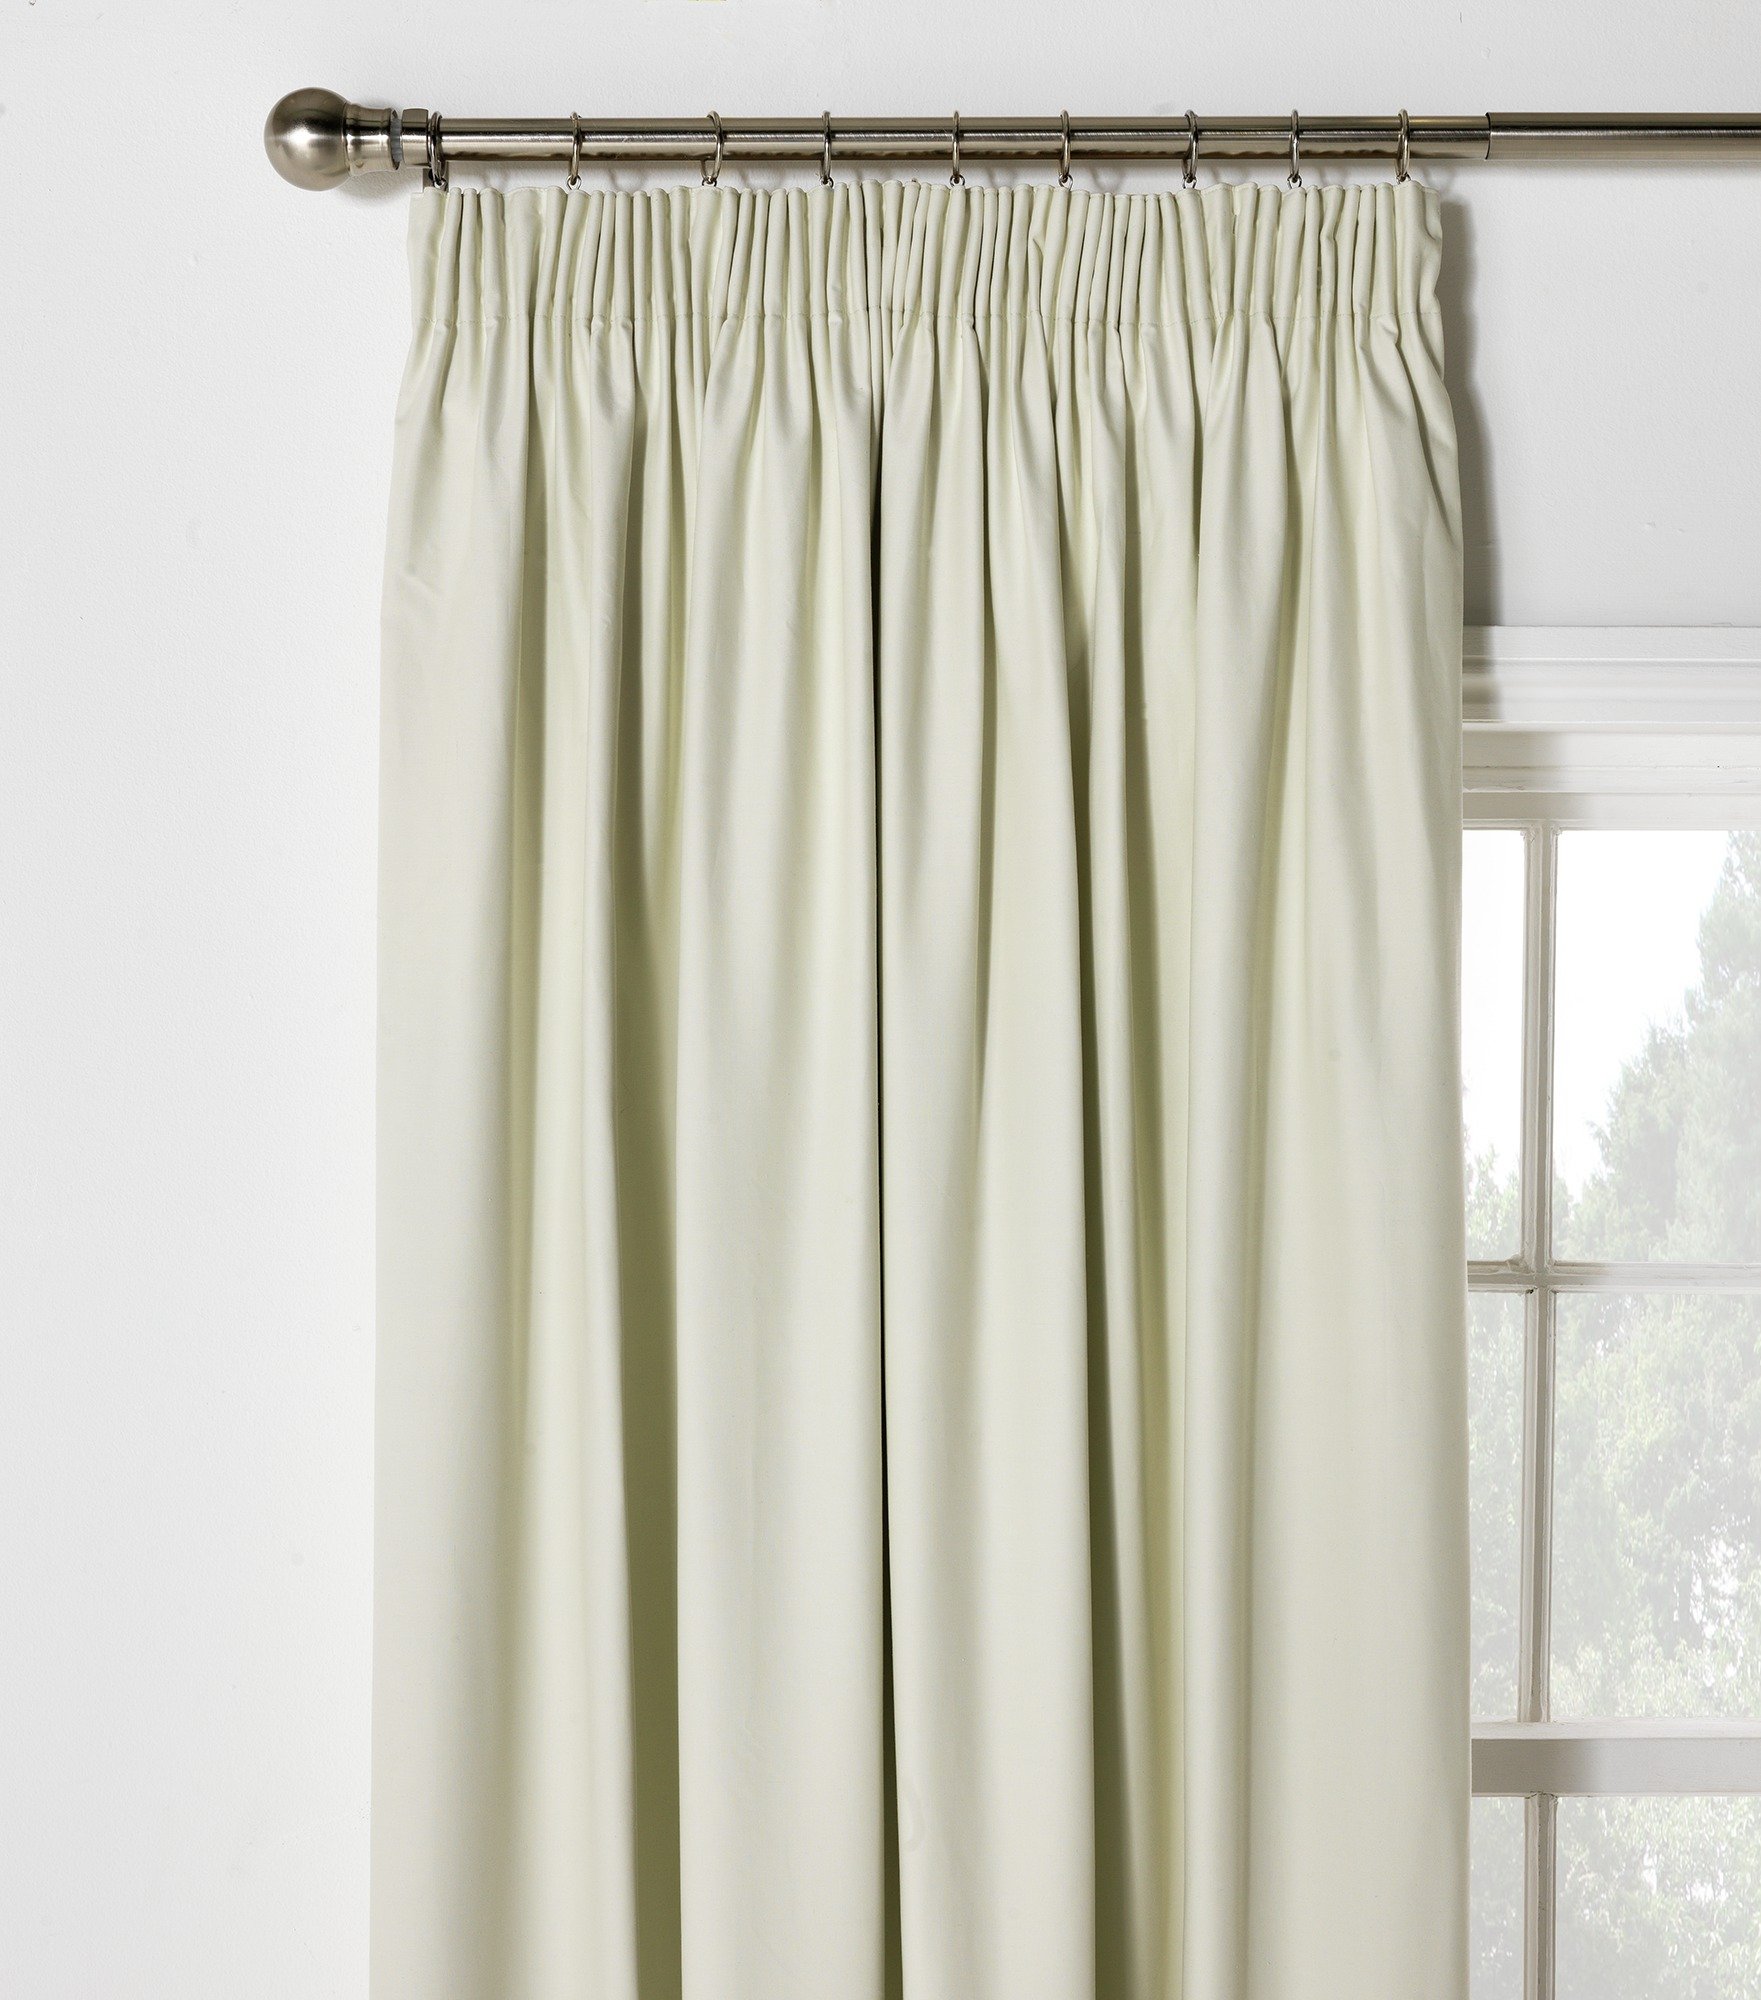 ColourMatch Blackout Curtains -117x137cm - Cotton Cream